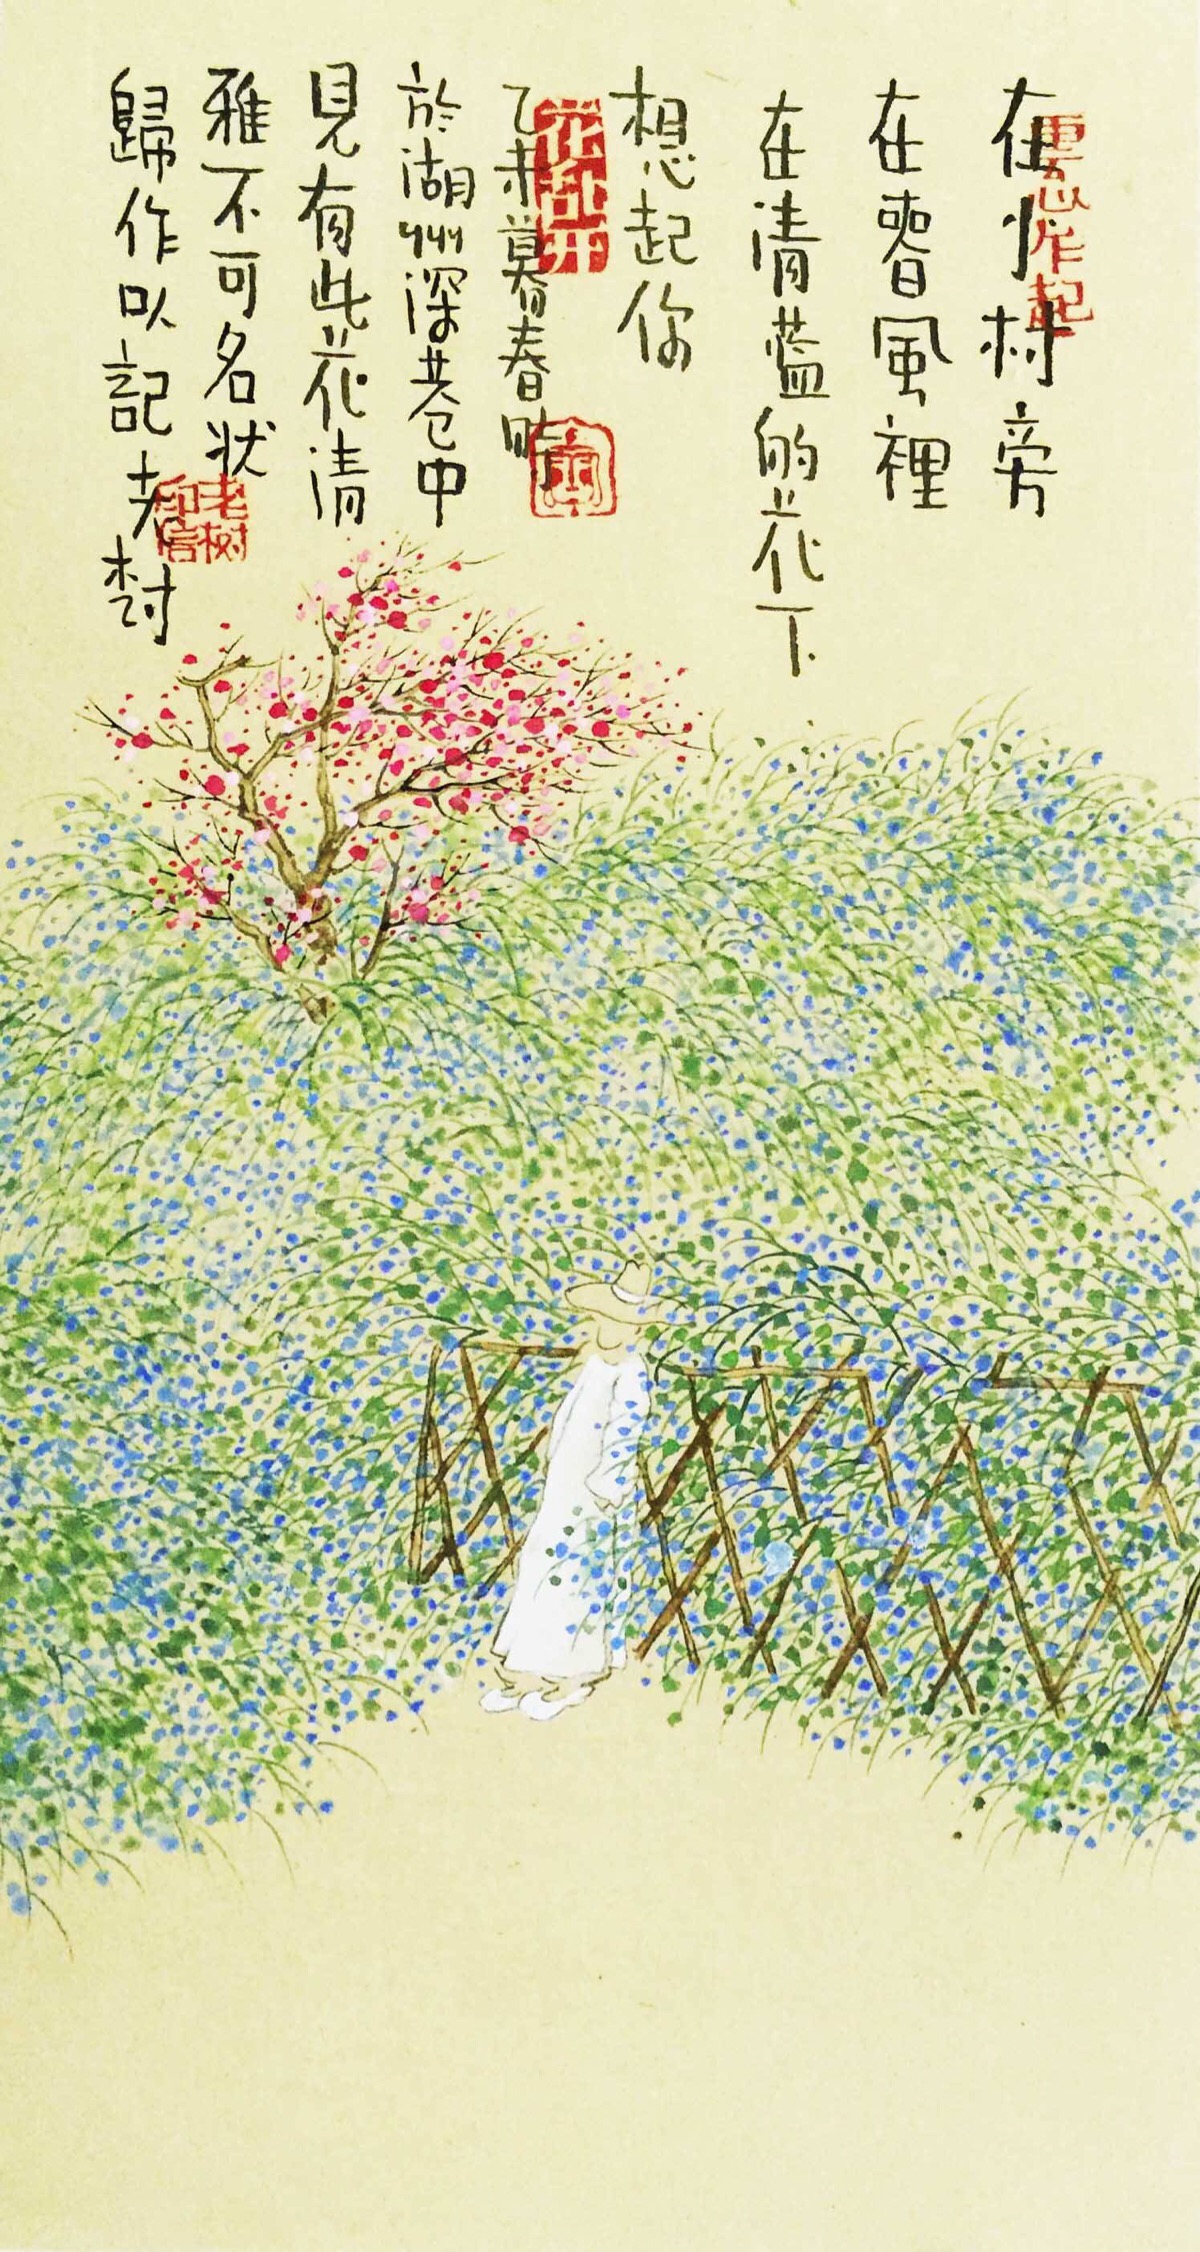 【老树画画】在小村旁,在春风里,在清蓝的花下,想起你.